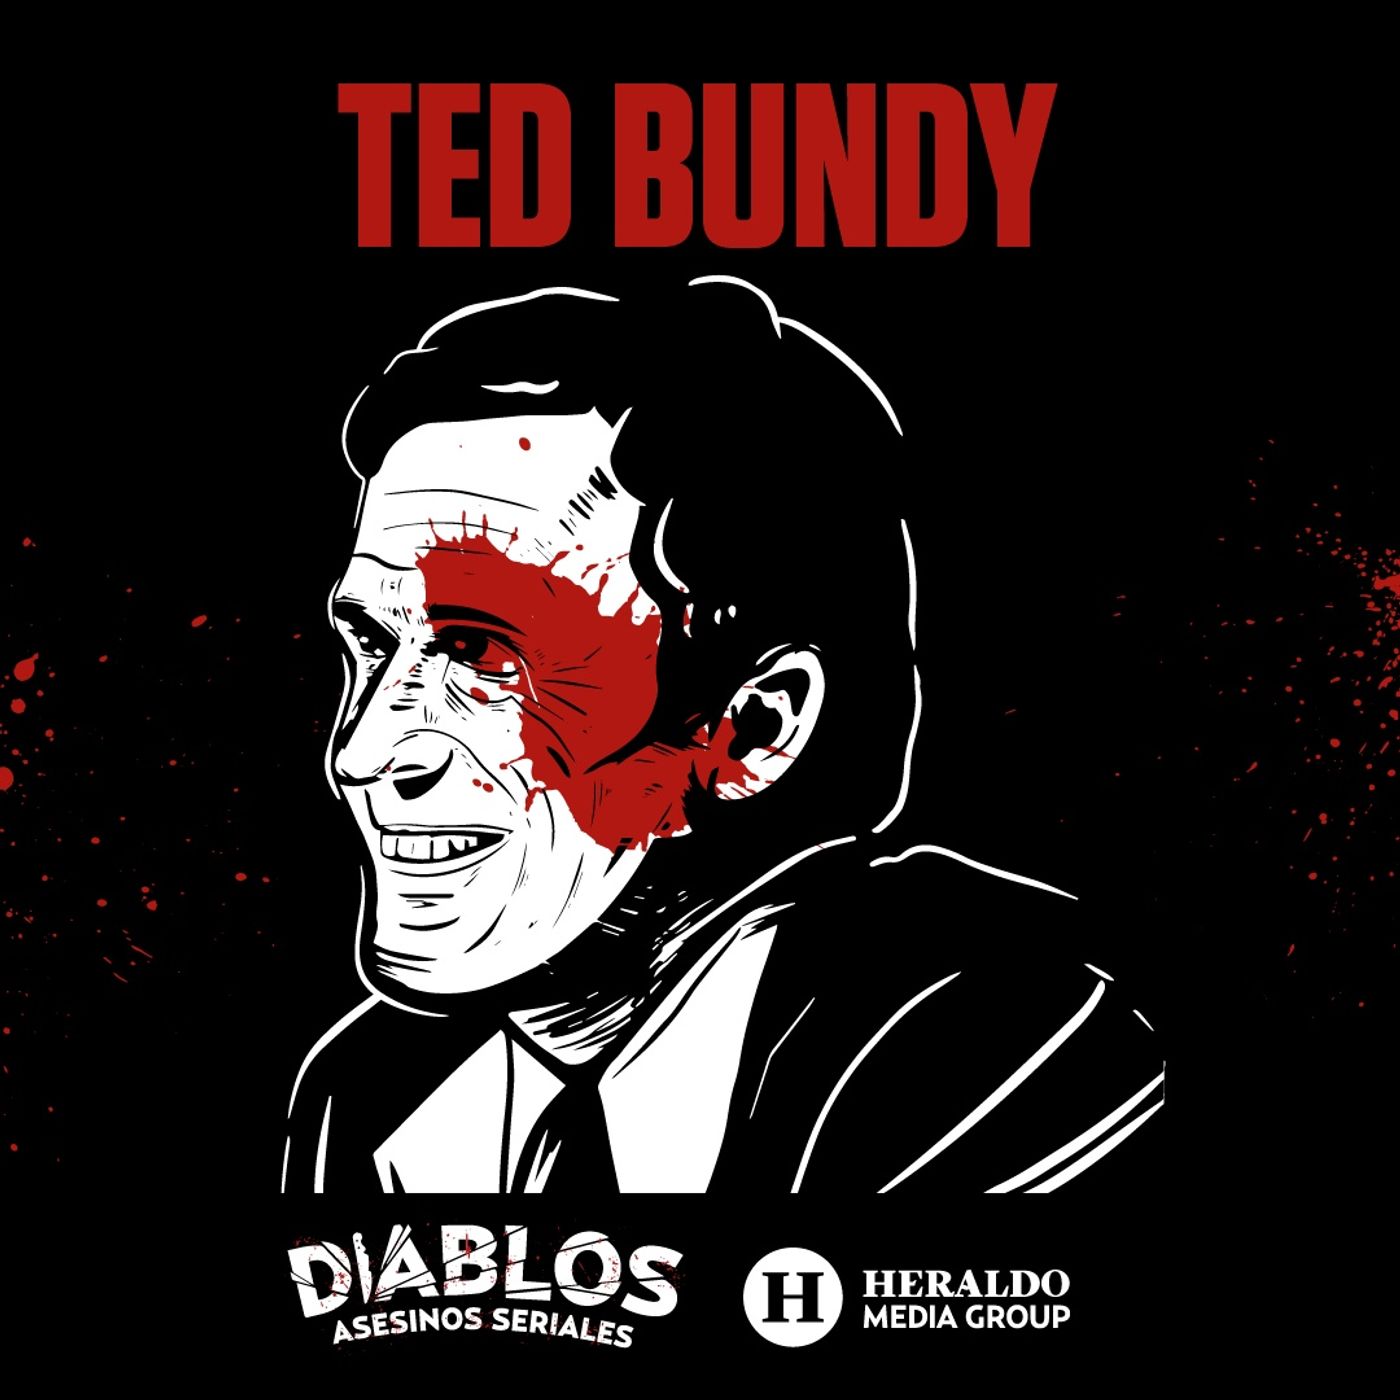 Ted Bundy: El sádico asesino serial de mujeres | Diablos